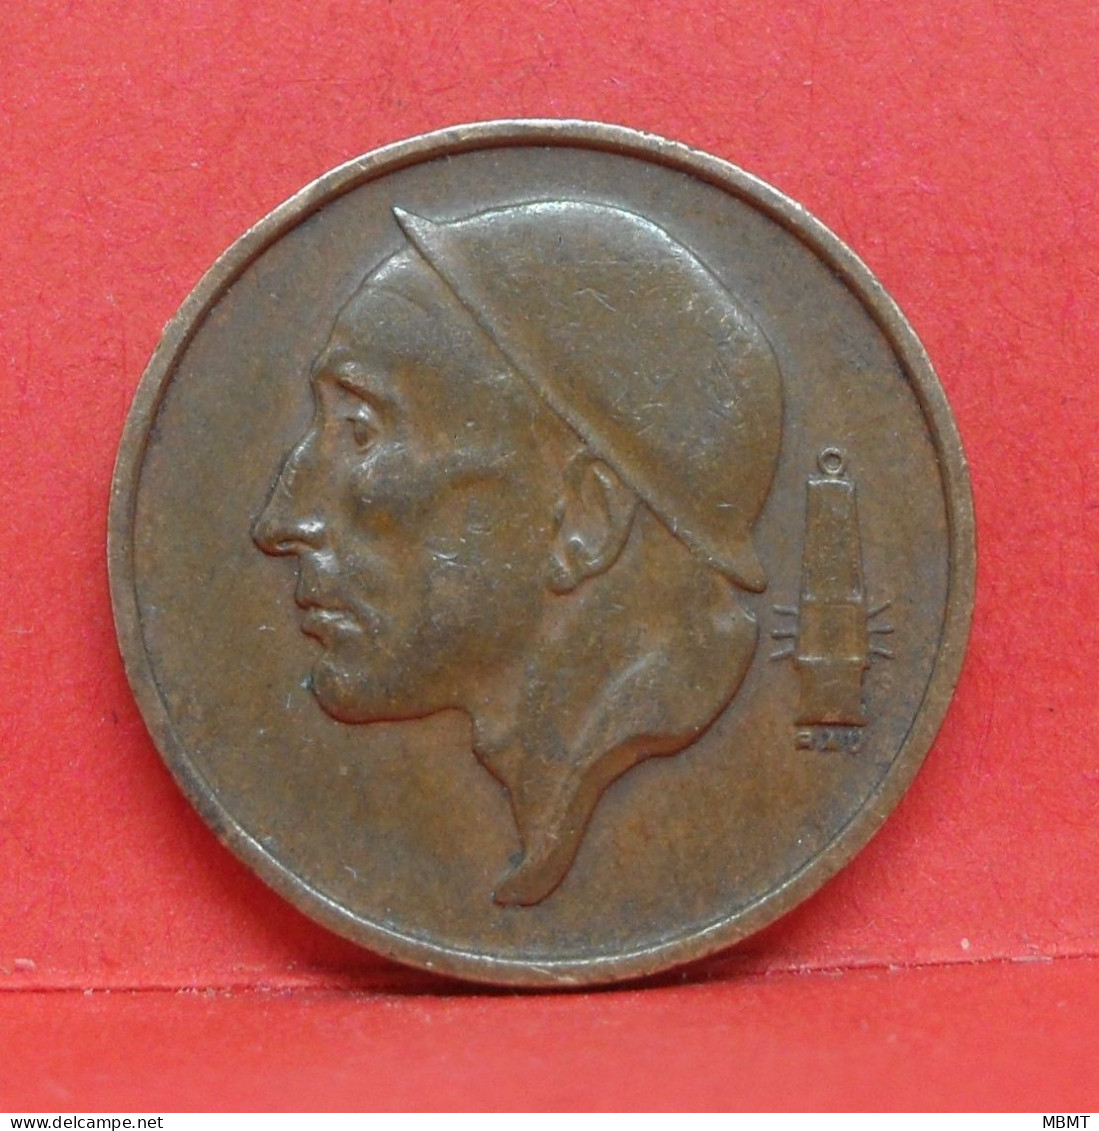 50 Centimes 1956 - TTB - Pièce Monnaie Belgie - Article N°1878 - 50 Centimes